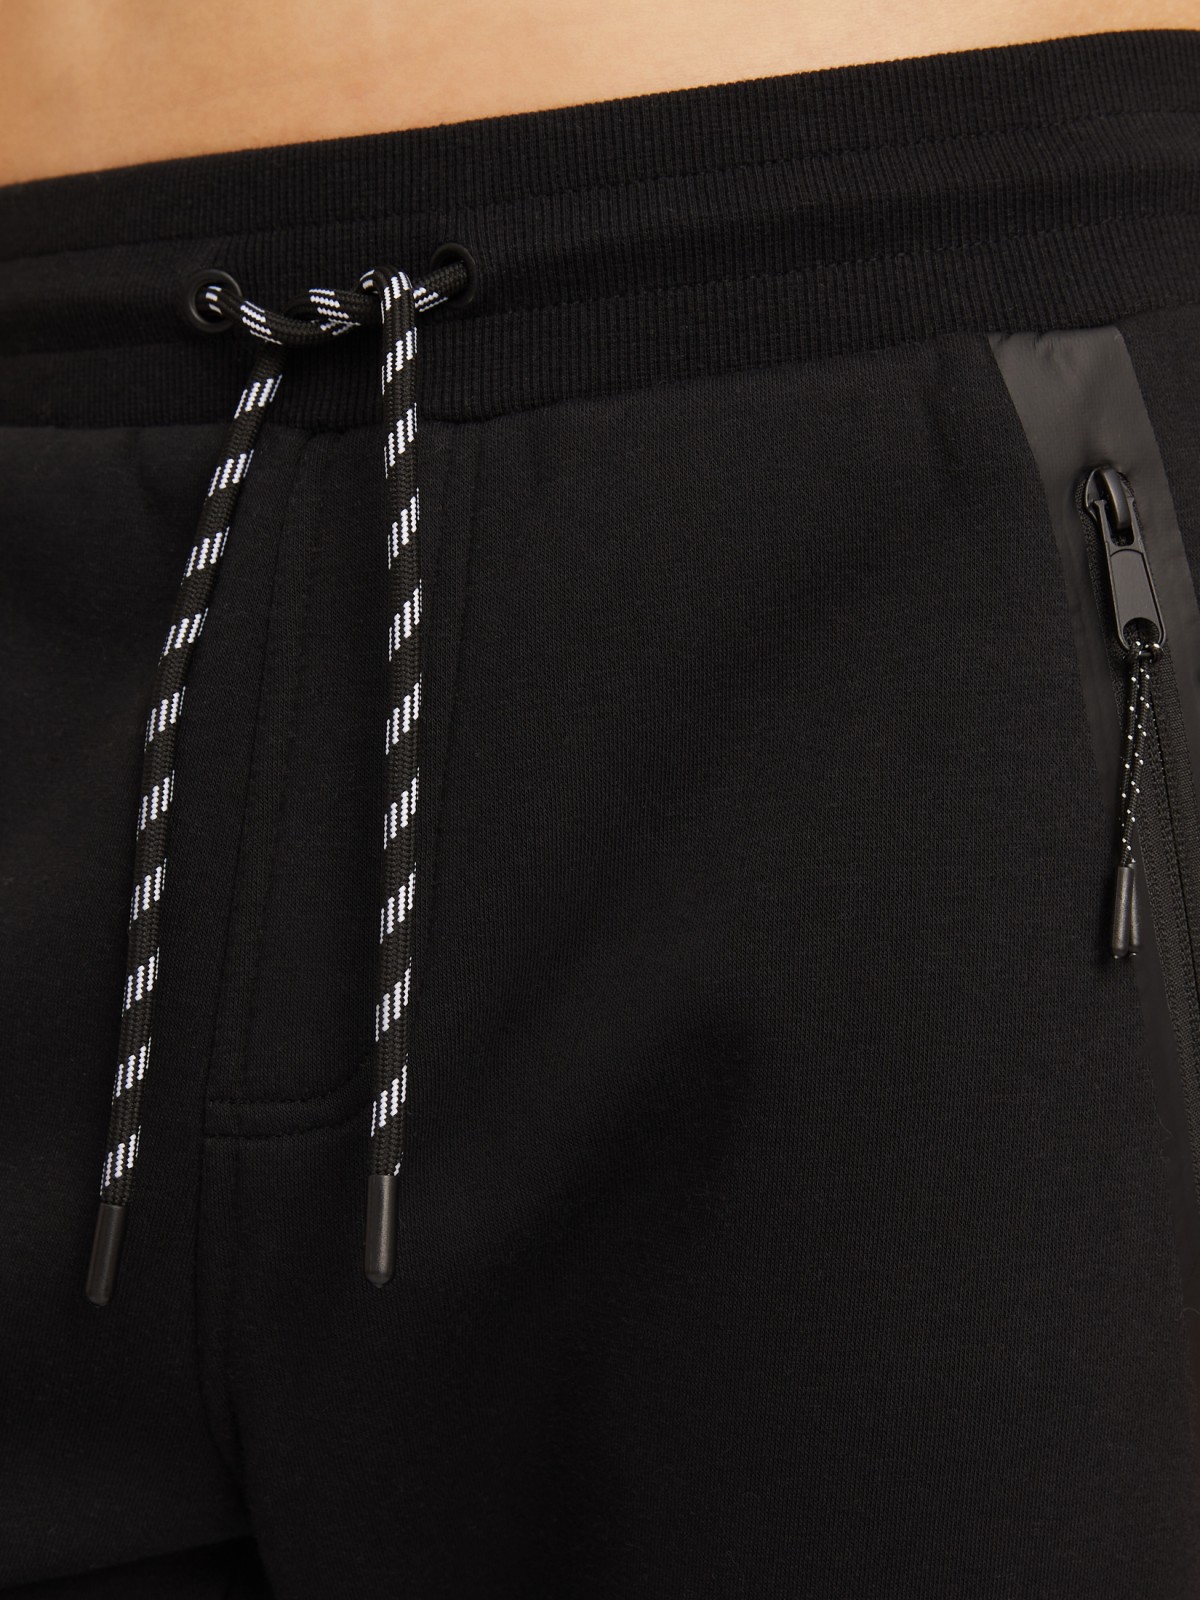 Утеплённые трикотажные брюки-джоггеры в спортивном стиле zolla 014117660063, цвет черный, размер S - фото 4